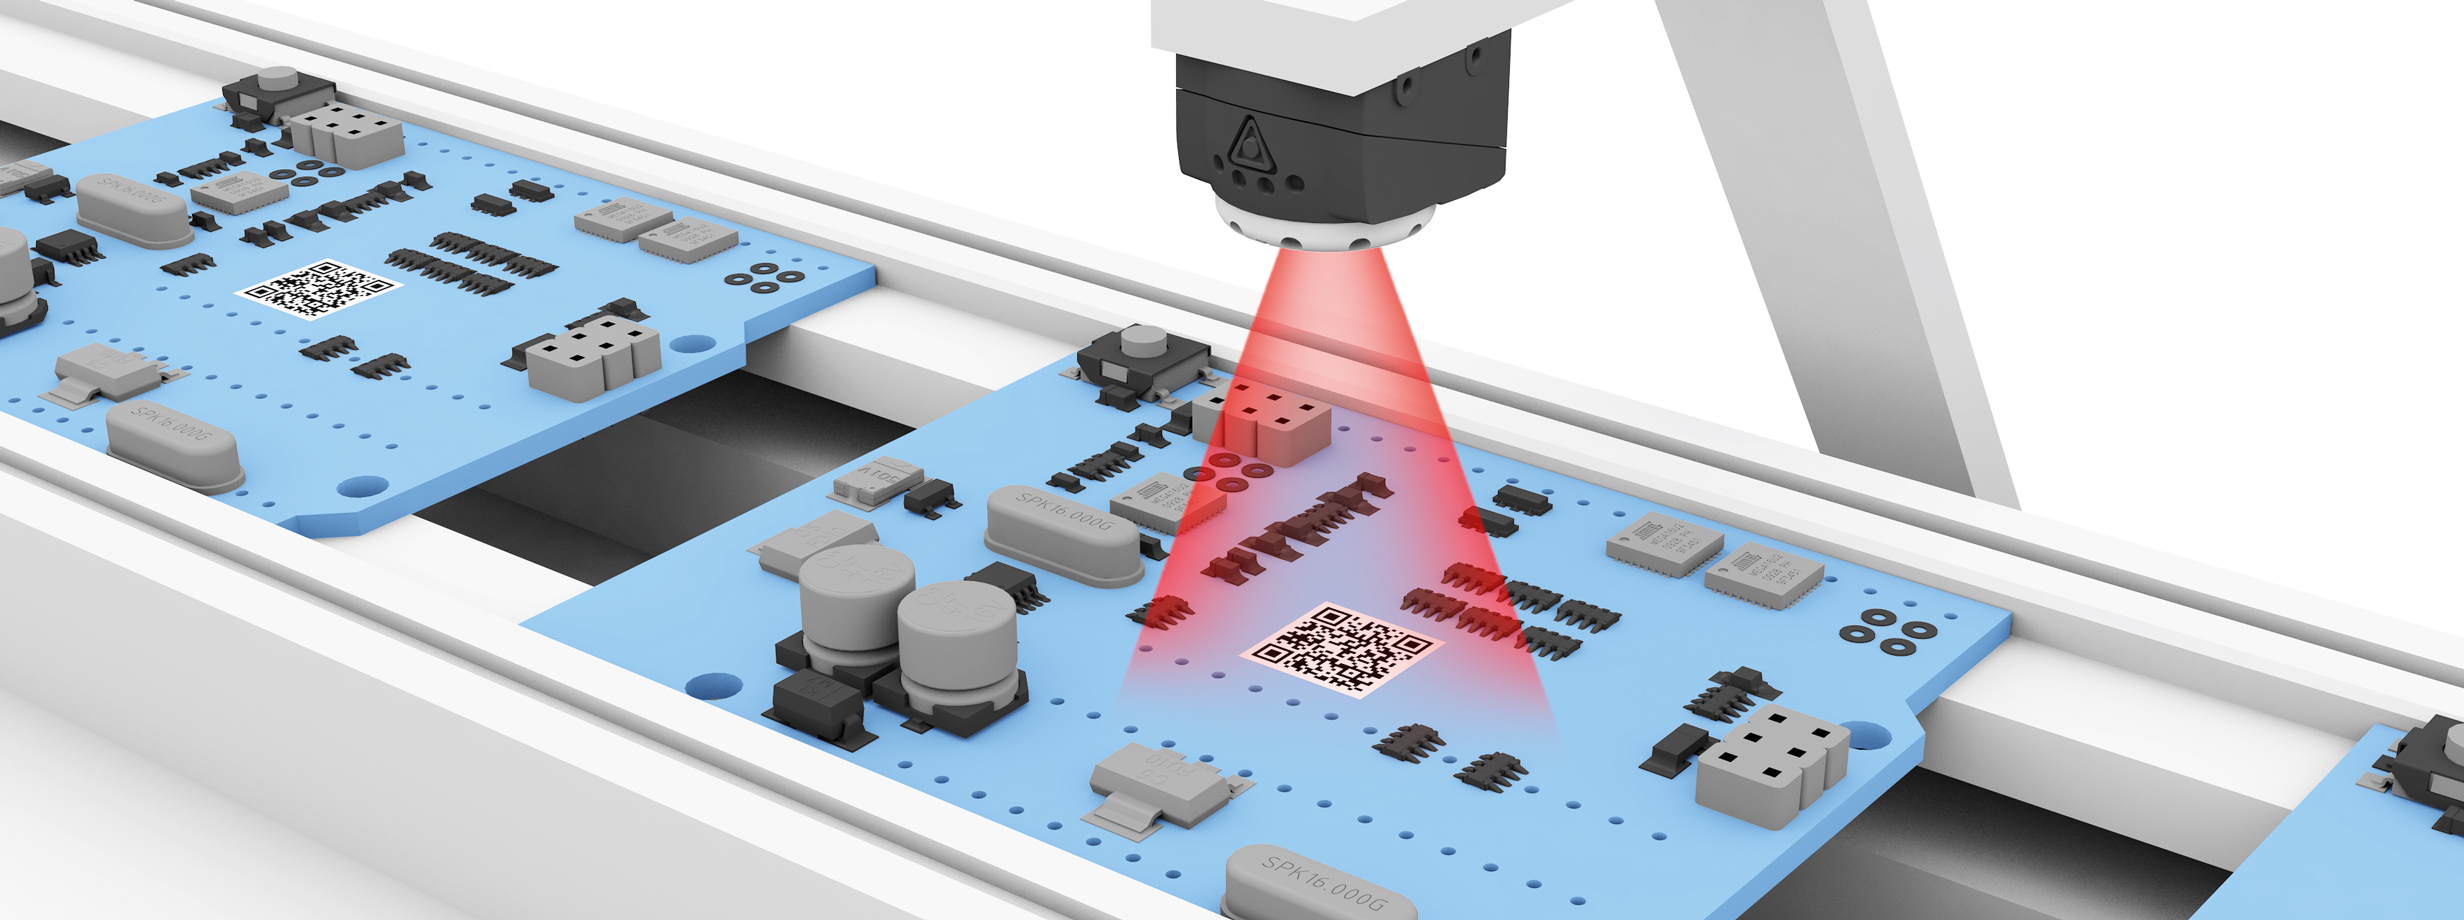 Identificar placas de circuito image